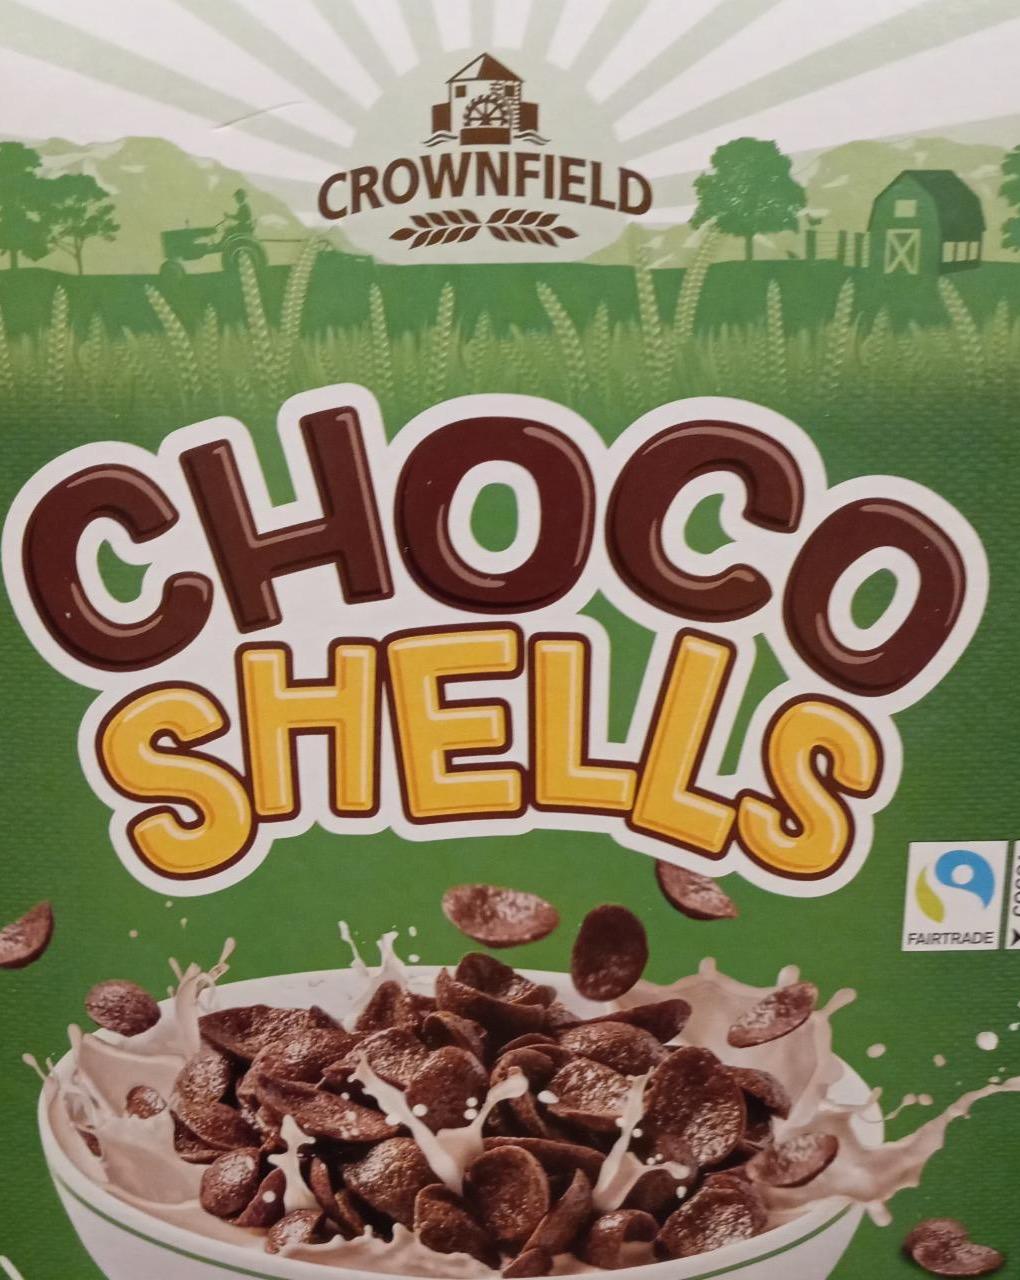 Zdjęcia - Choco shells Crownfield